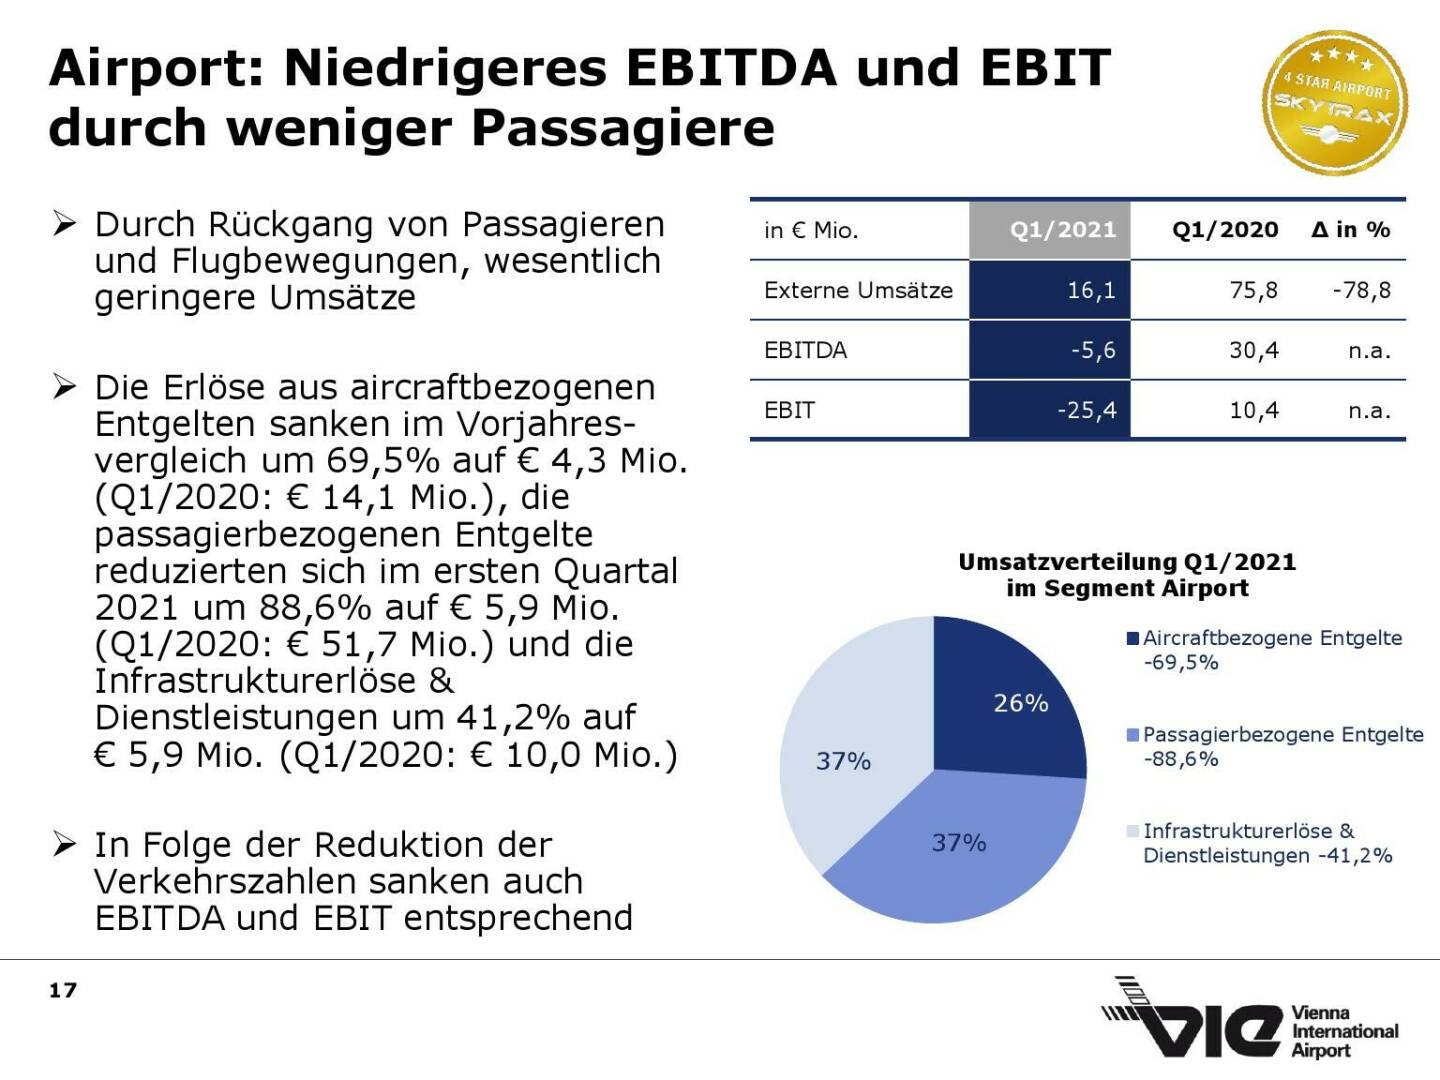 Flughafen Wien - Airport: Niedrigeres EBITDA und EBIT durch weniger Passagiere 